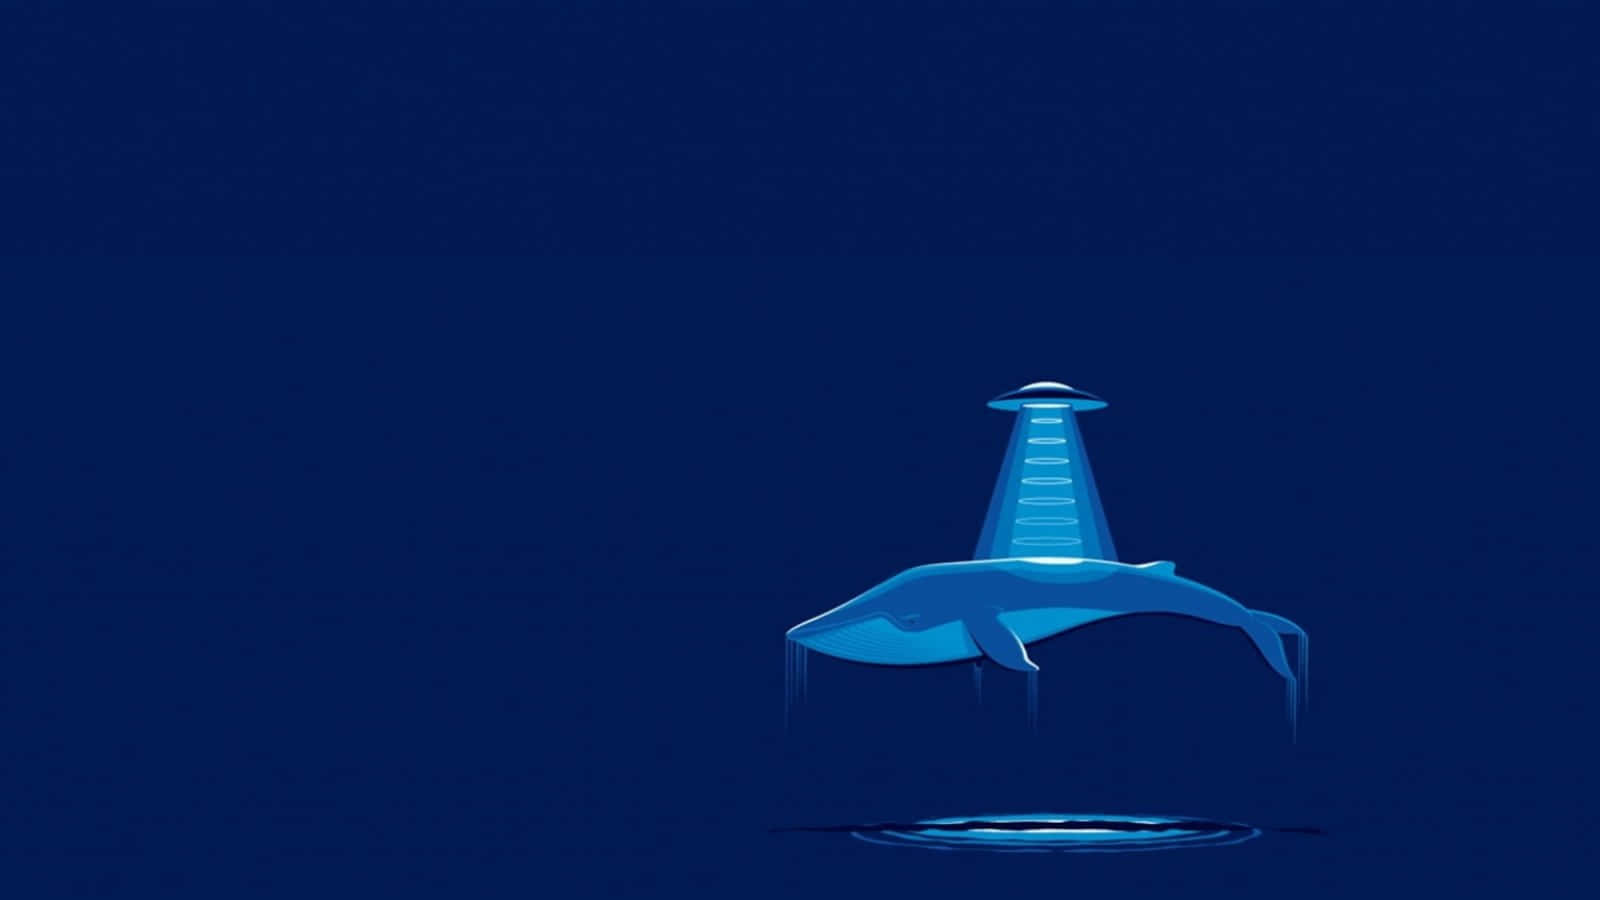 Immaginedi Arte Digitale Di Un'avventura Di Rapimento Da Parte Di Un Alieno Balena Blu.